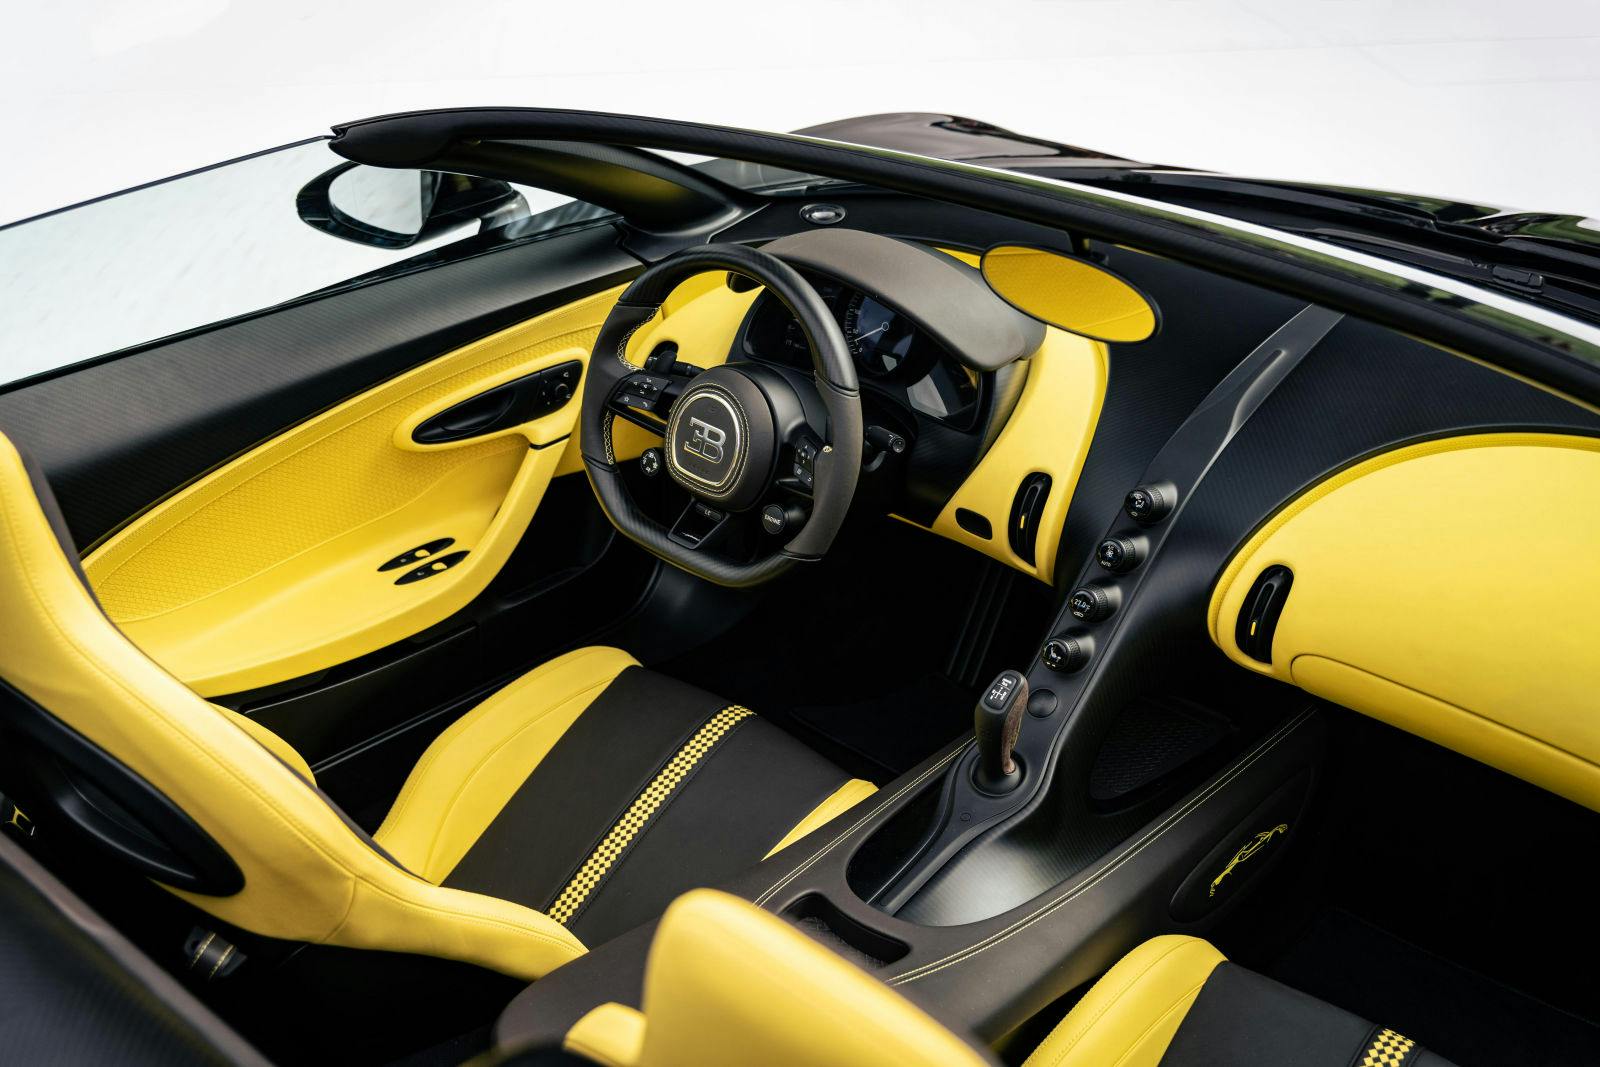 Der Innenraum des W16 Mistral wurde von den Lieblingsfarben Ettore Bugattis inspiriert: Schwarz und Gelb.